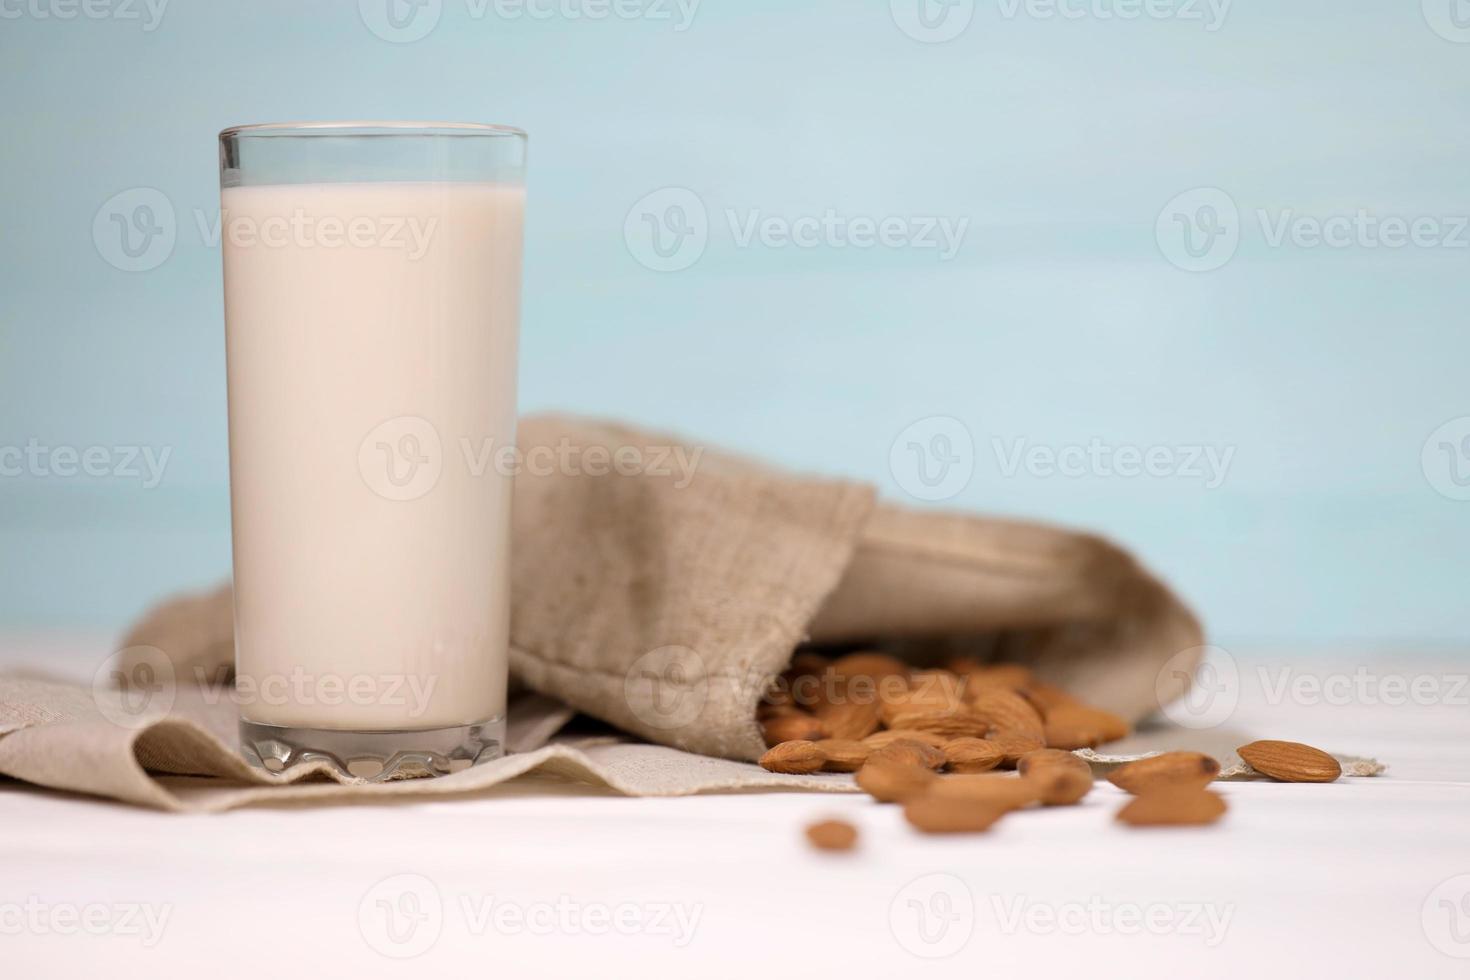 copo de leite de amêndoa com nozes de amêndoa sobre tecido de lona sobre mesa de madeira branca. leite alternativo de laticínios para desintoxicação, alimentação saudável e dietas foto